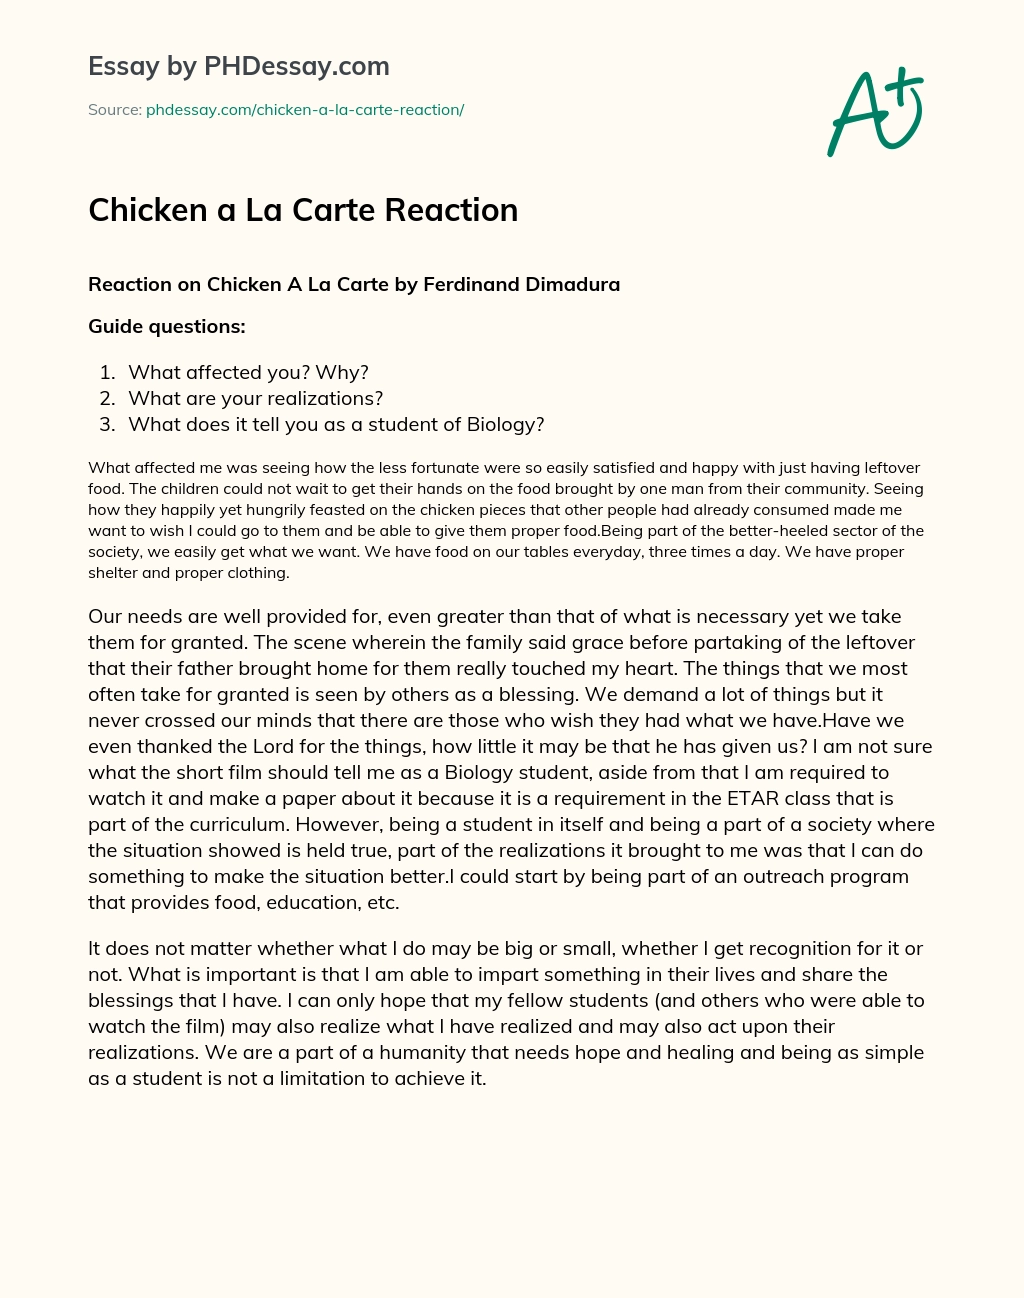 Chicken a La Carte Reaction essay